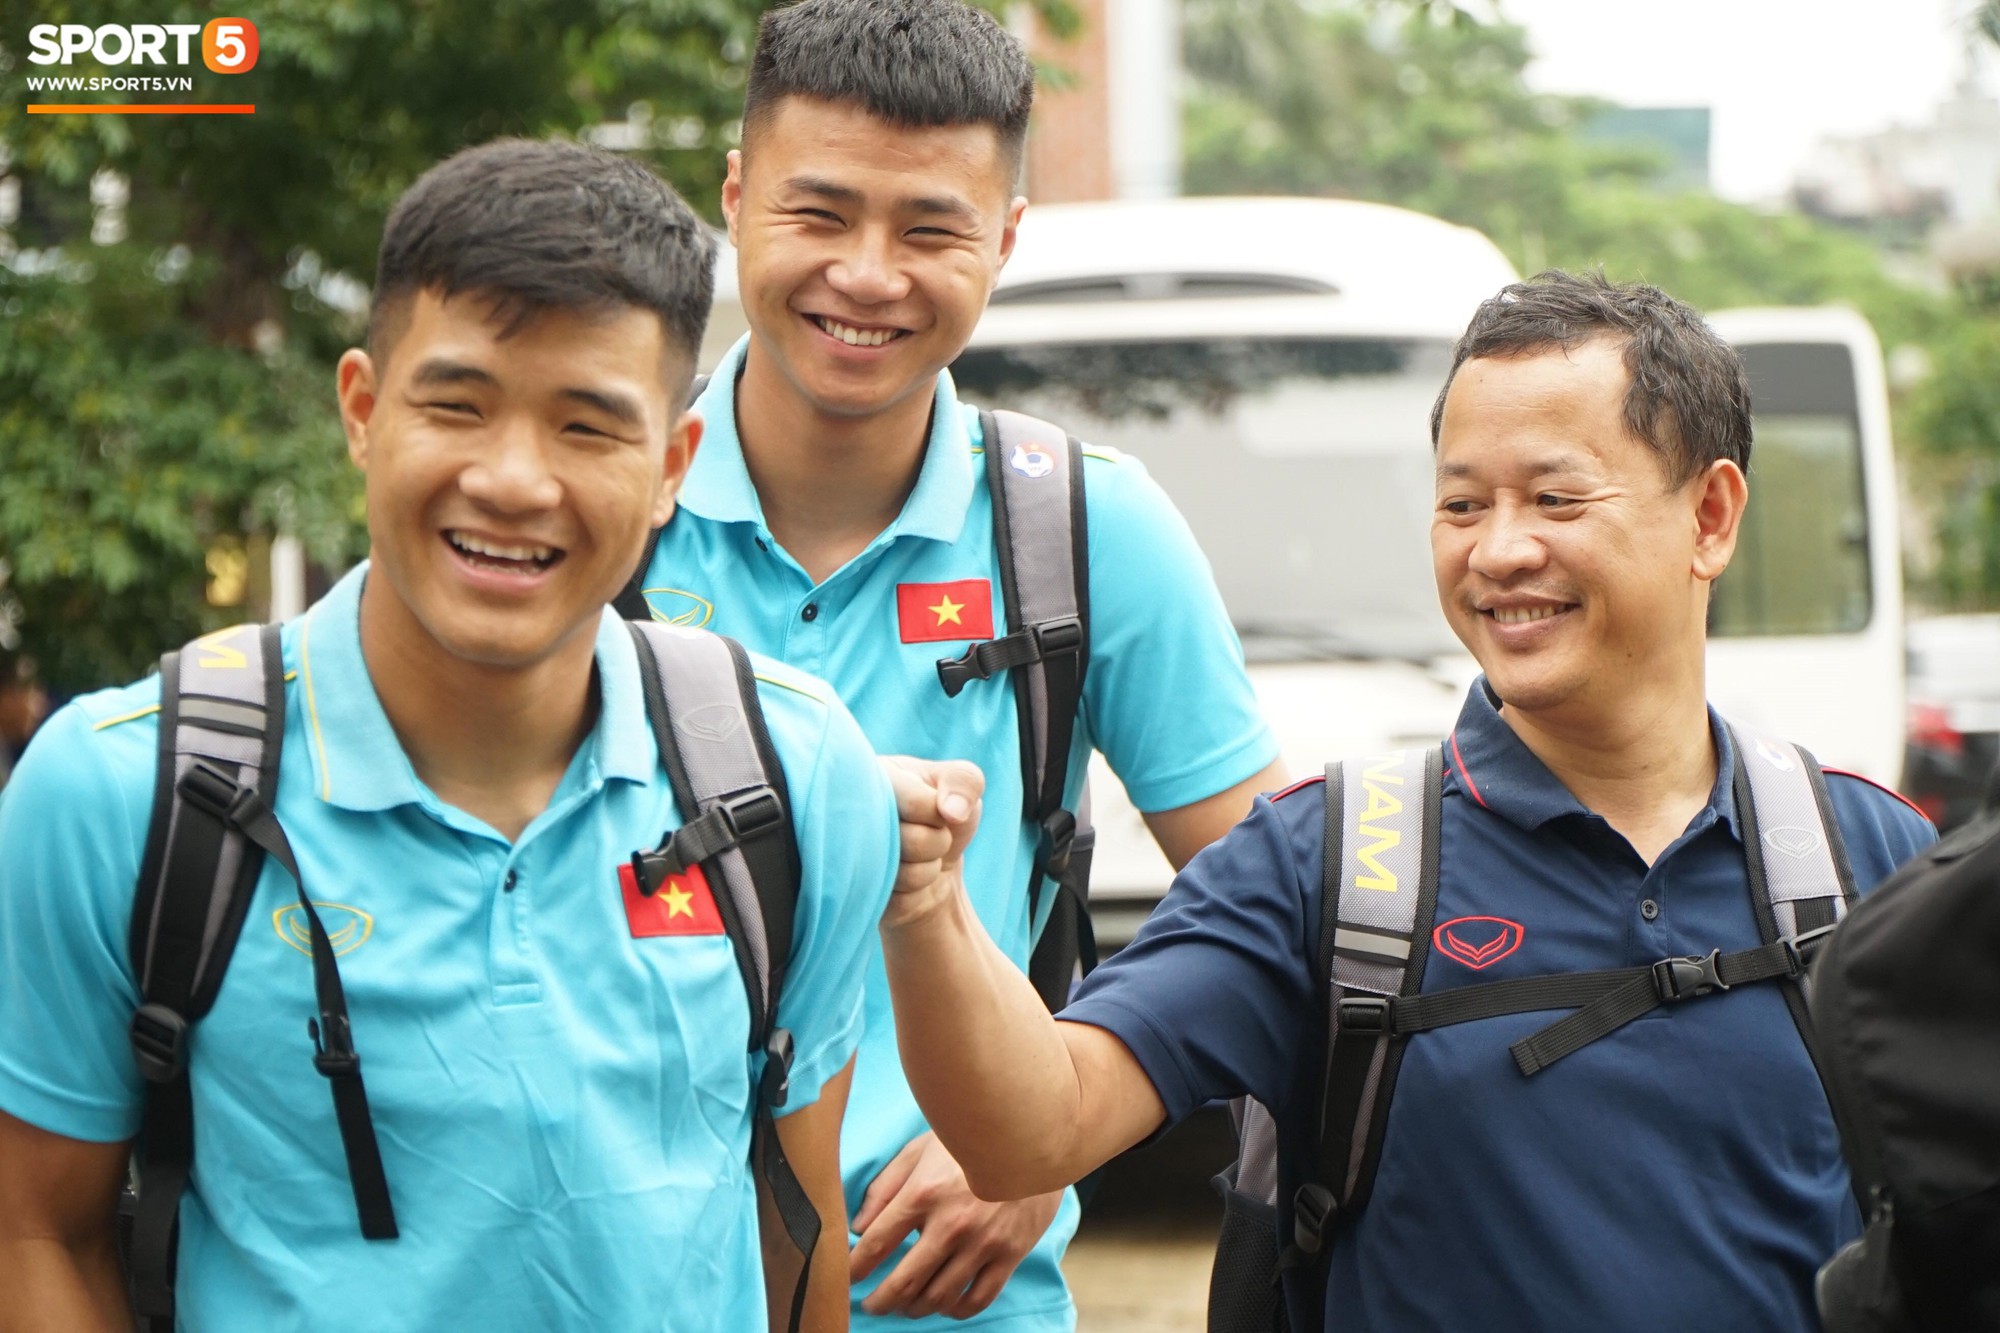 Dàn tuyển thủ Việt Nam bảnh bao hội quân chuẩn bị dự Kings Cup 2019 - Ảnh 11.